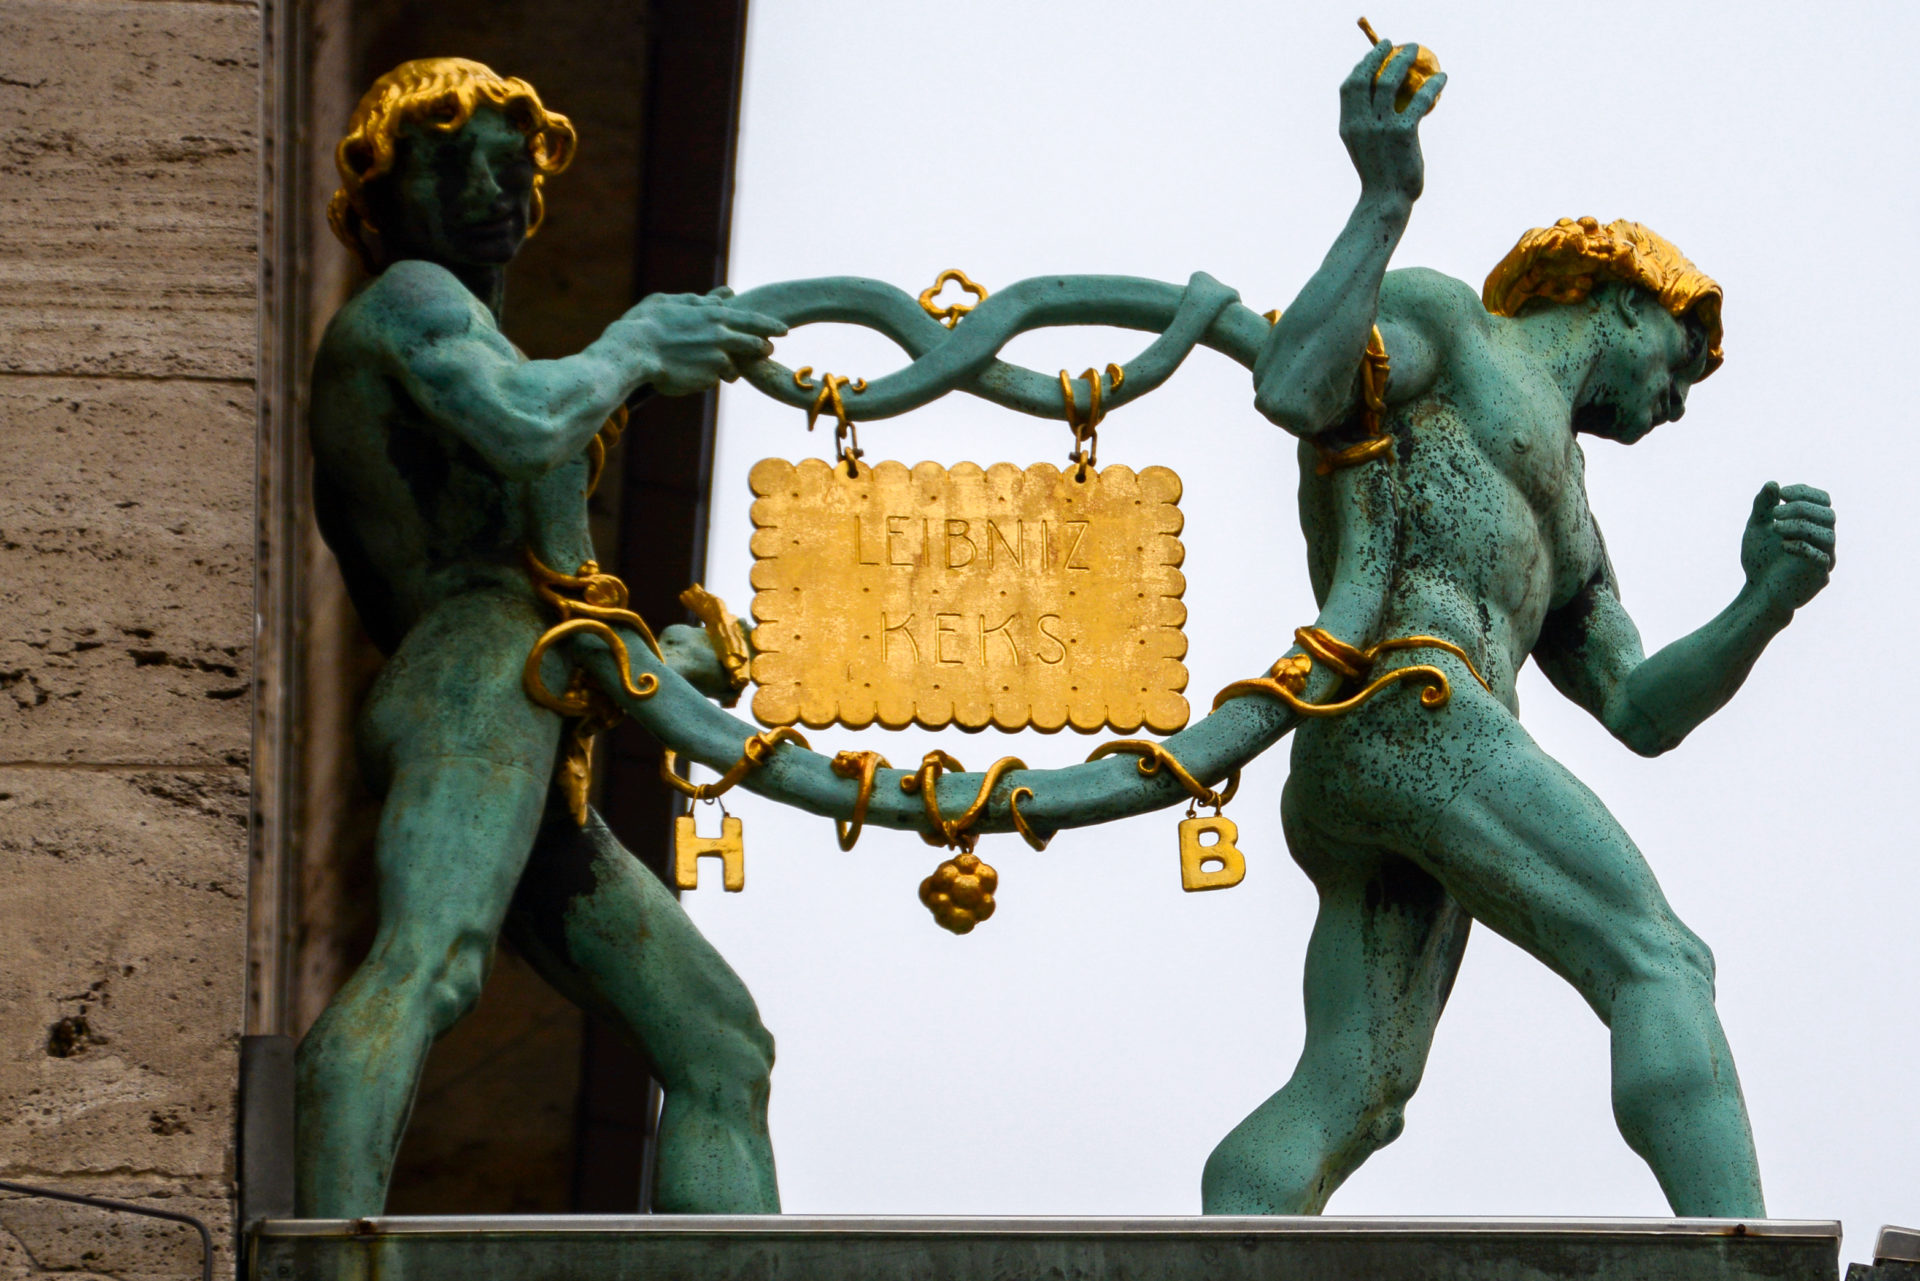 Figuren tragen einen goldenen Leibniz-Keks